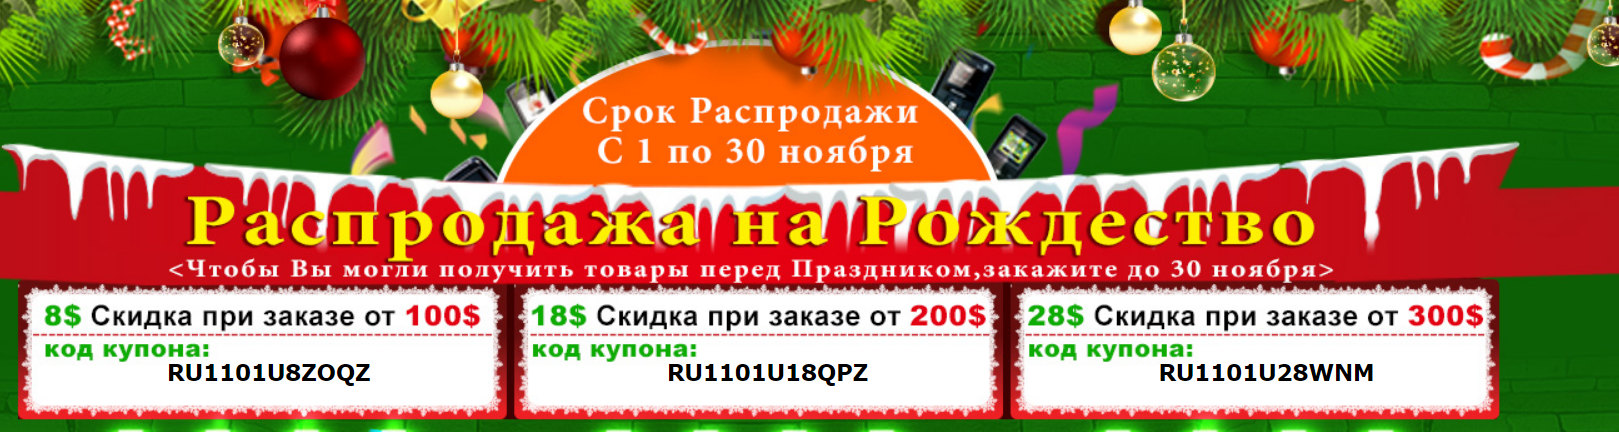 http://i63.fastpic.ru/big/2014/1108/0d/a3f316d3980a879123b1ea1b3bde870d.png